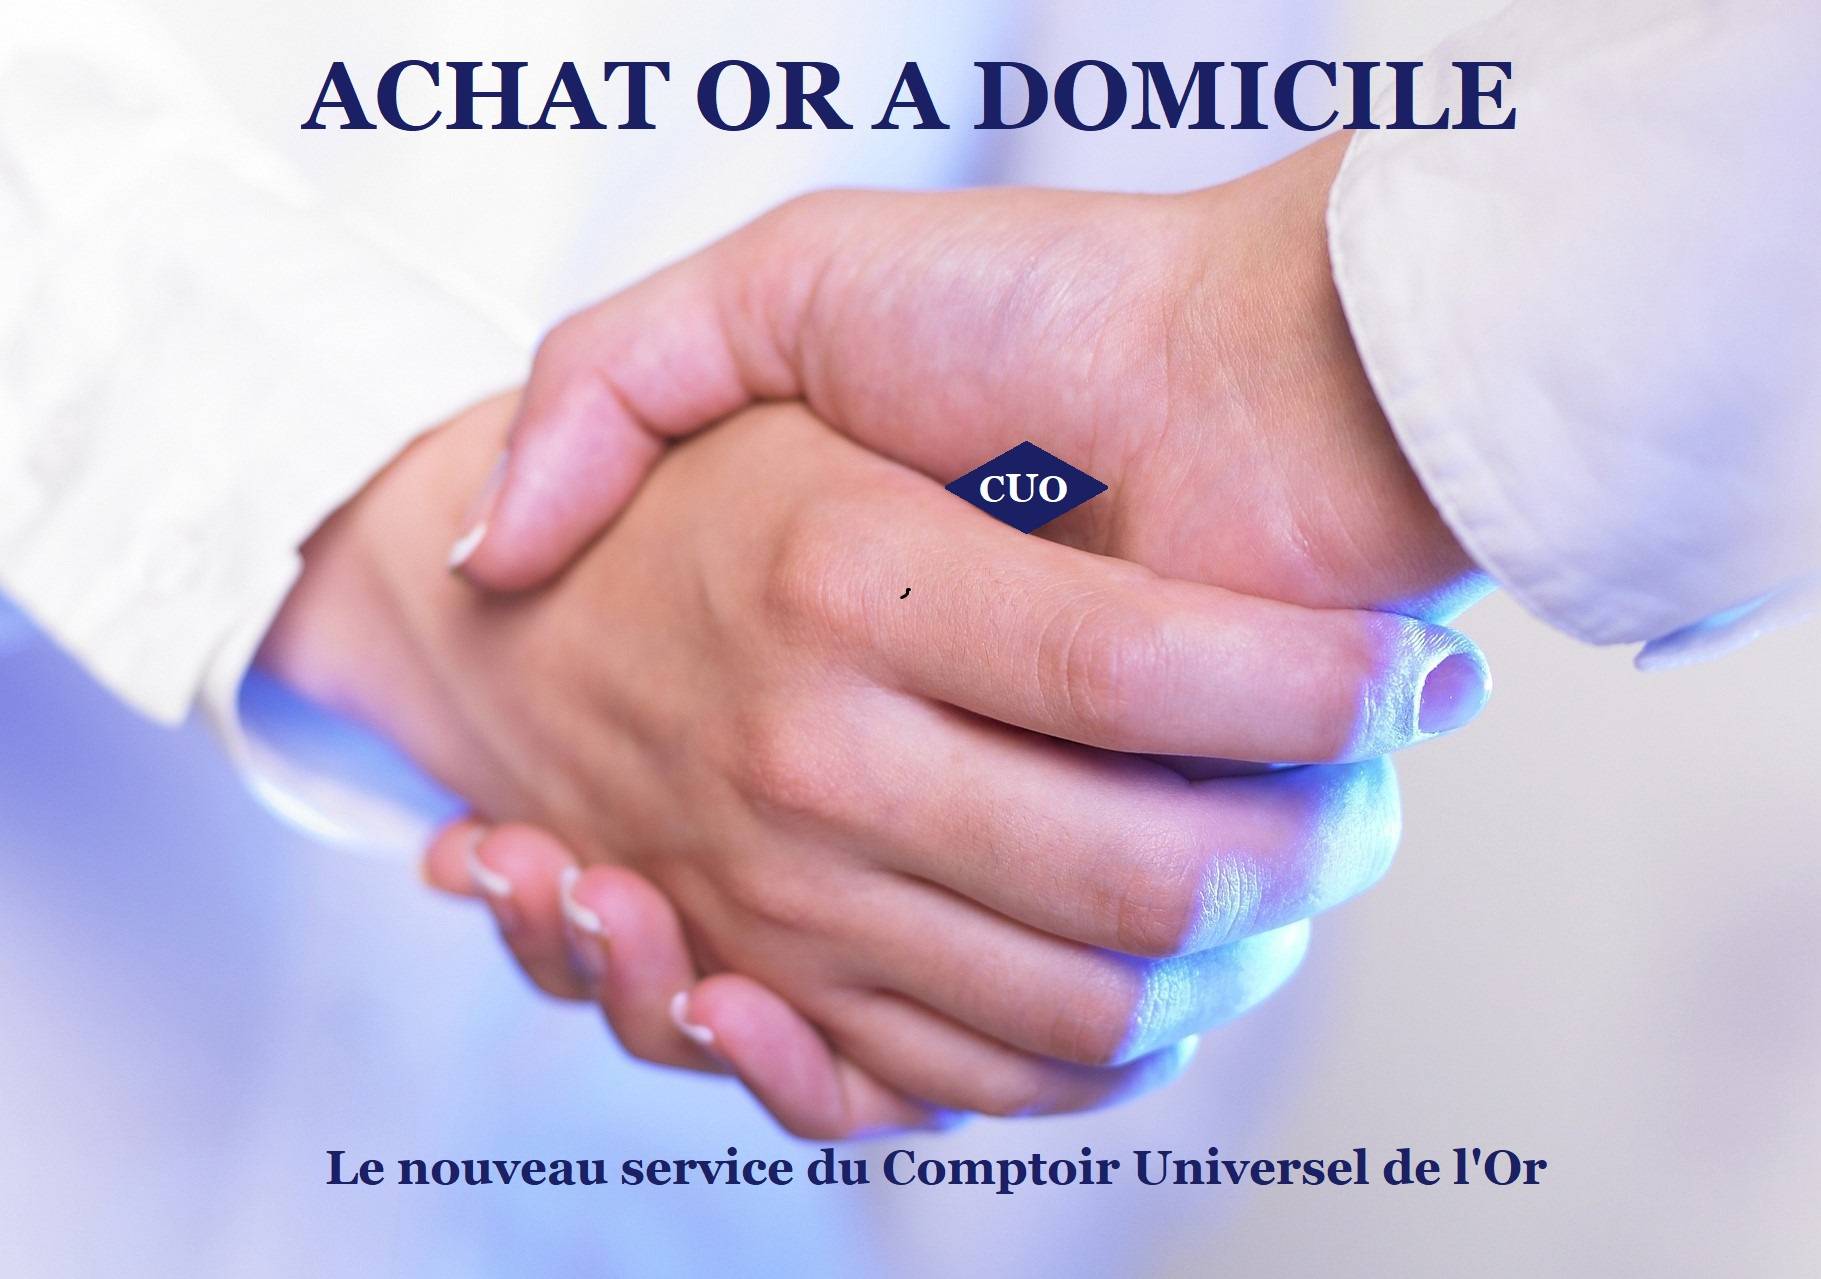 ACHAT D'OR A DOMICILE PAR LE COMPTOIR UNIVERSEL DE L'OR